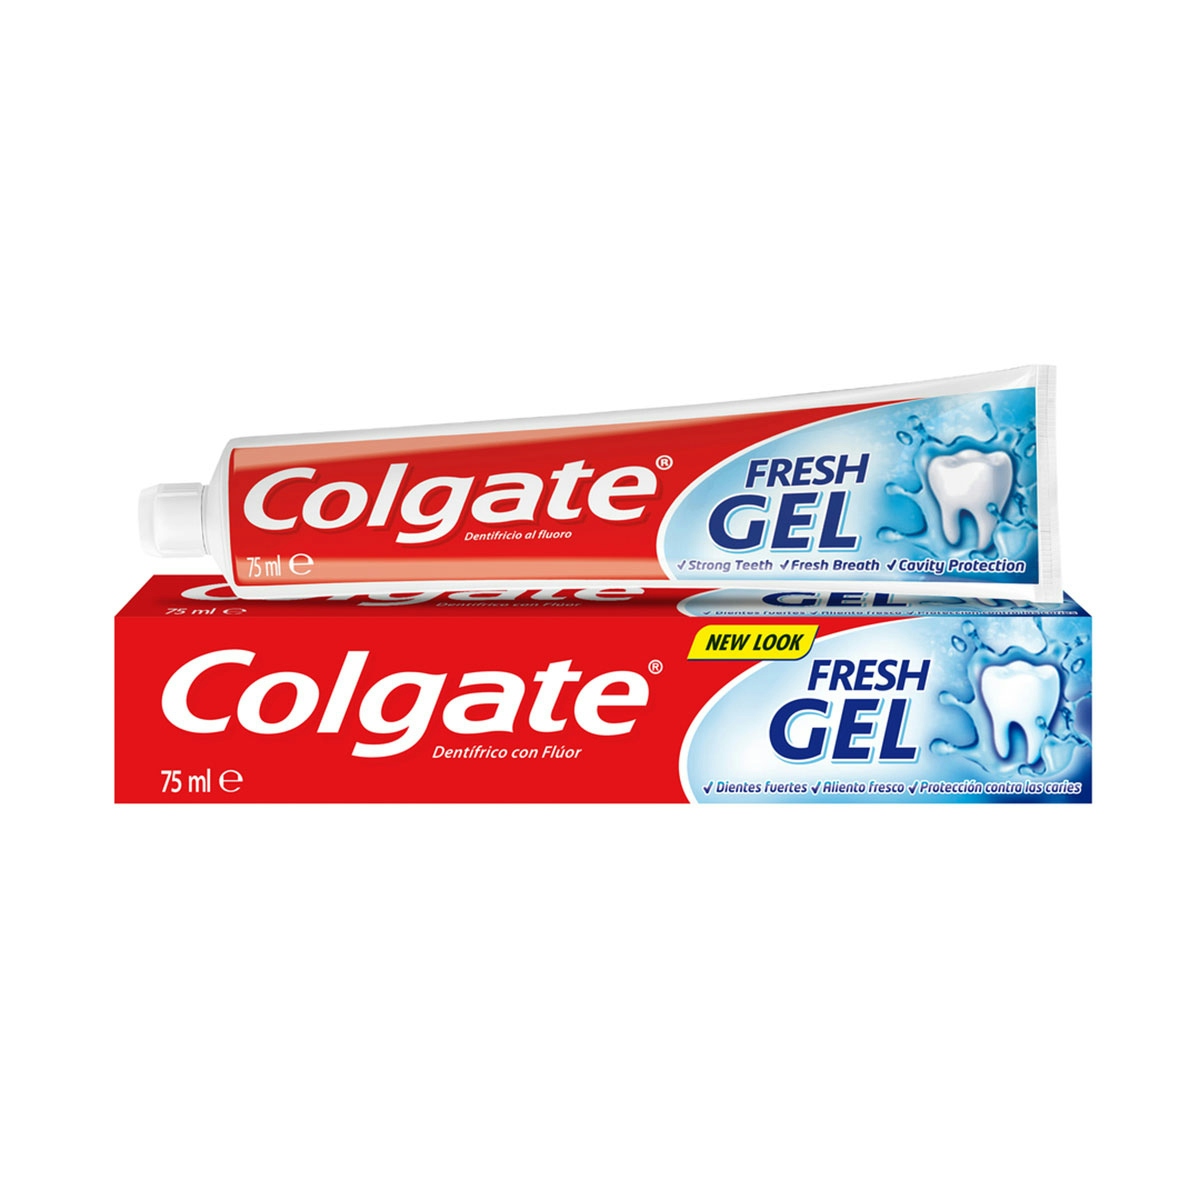 Pasta de dientes Colgate Fresh Gel dientes fuertes y aliento fresco 75ml